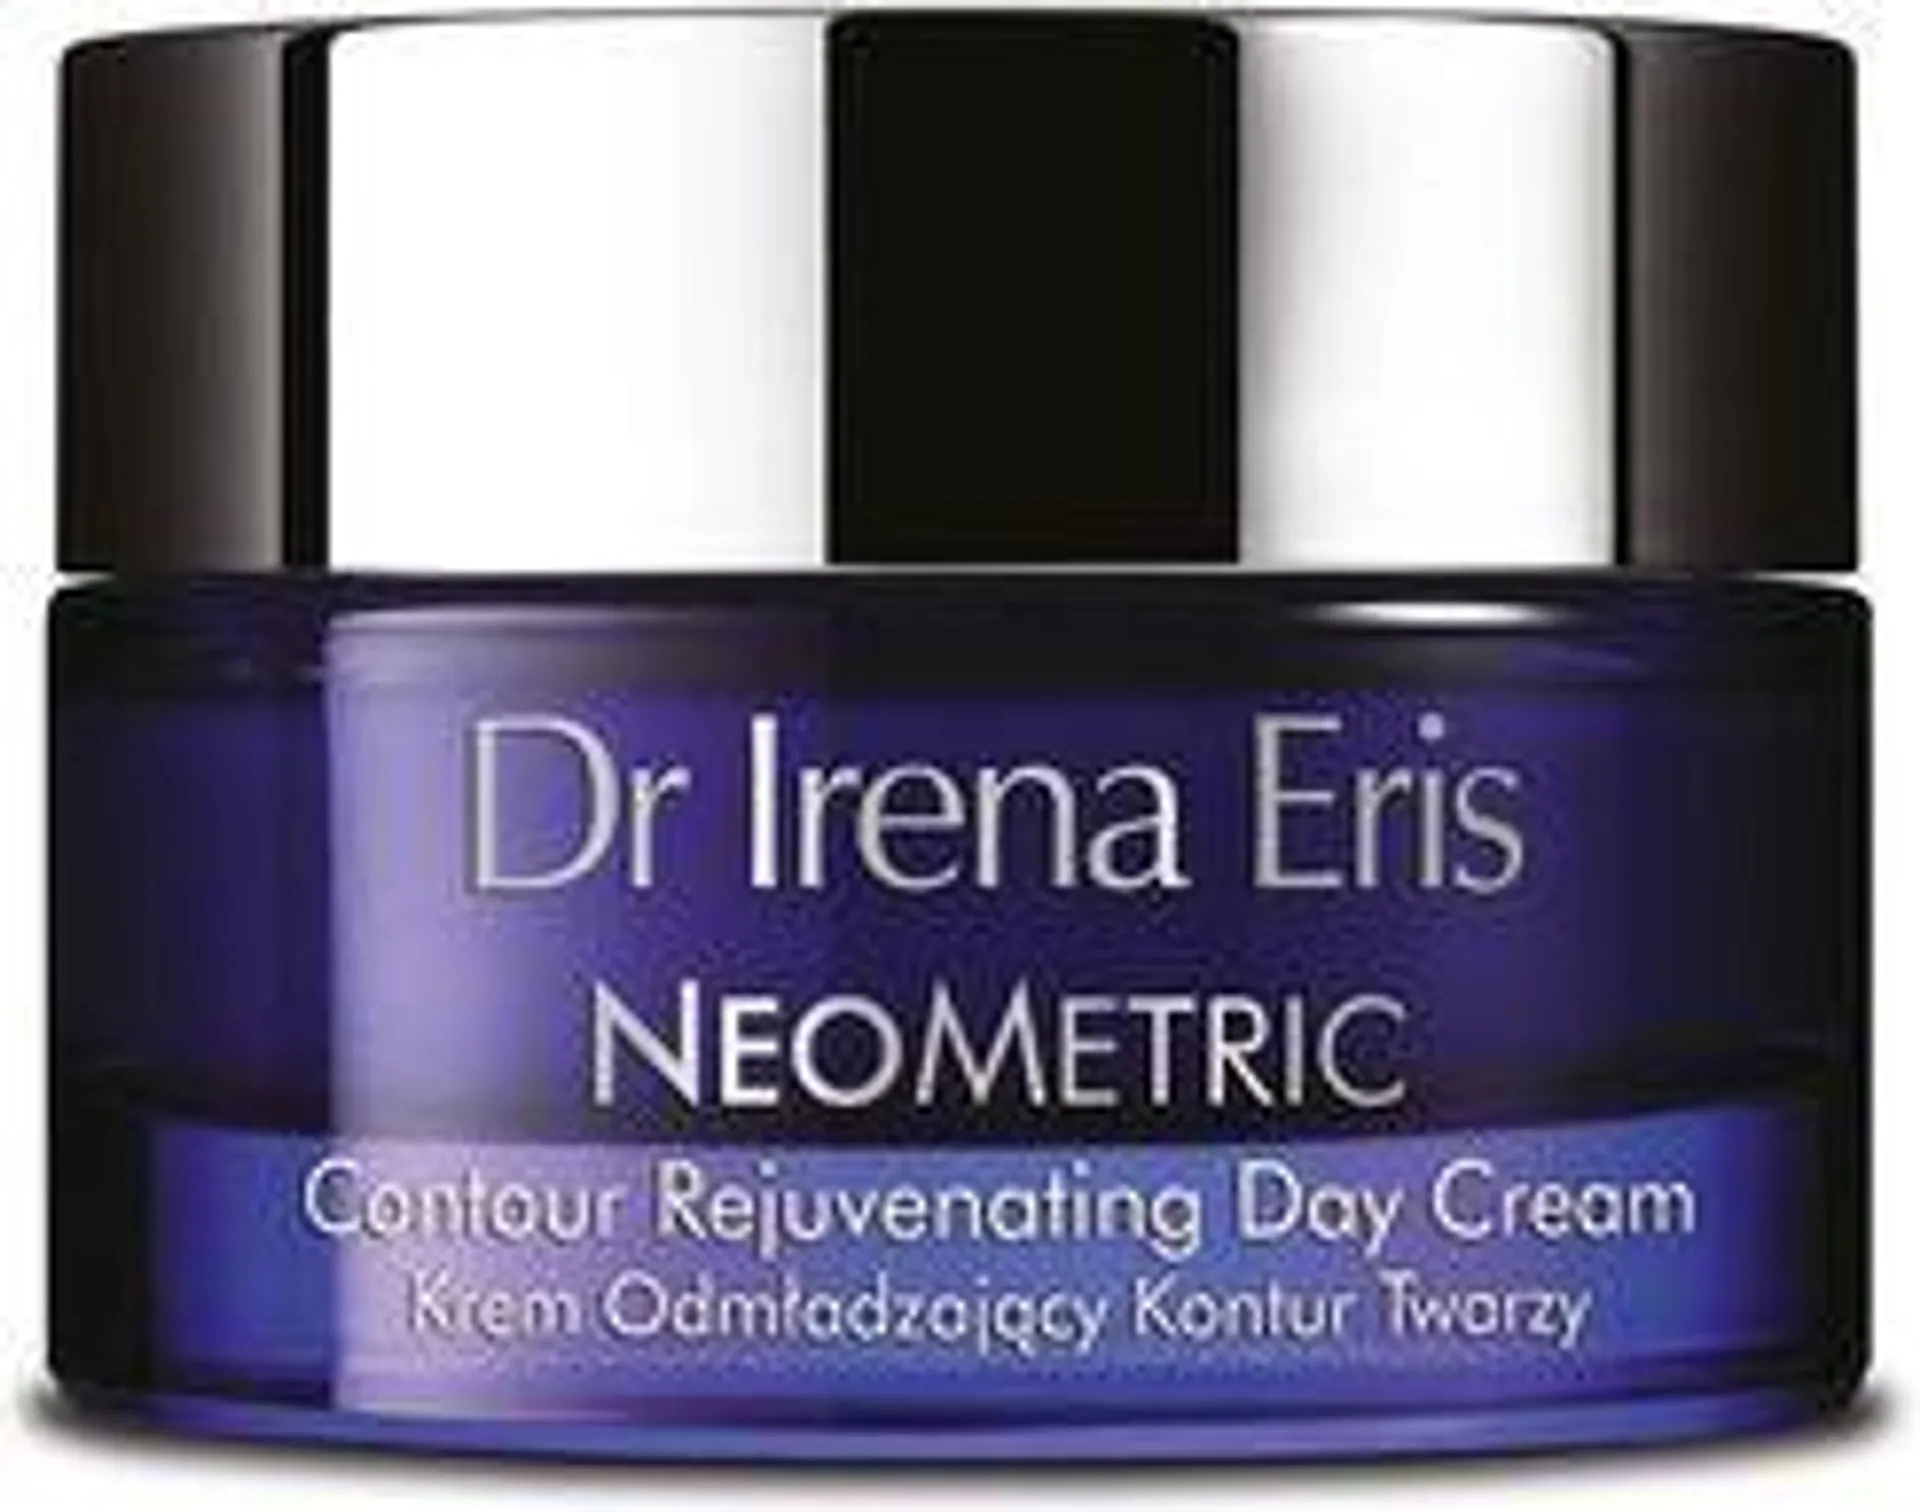 Dr Irena Eris Neometric 50+ Krem na Dzień Odmładzający Kontur Twarzy 50ml